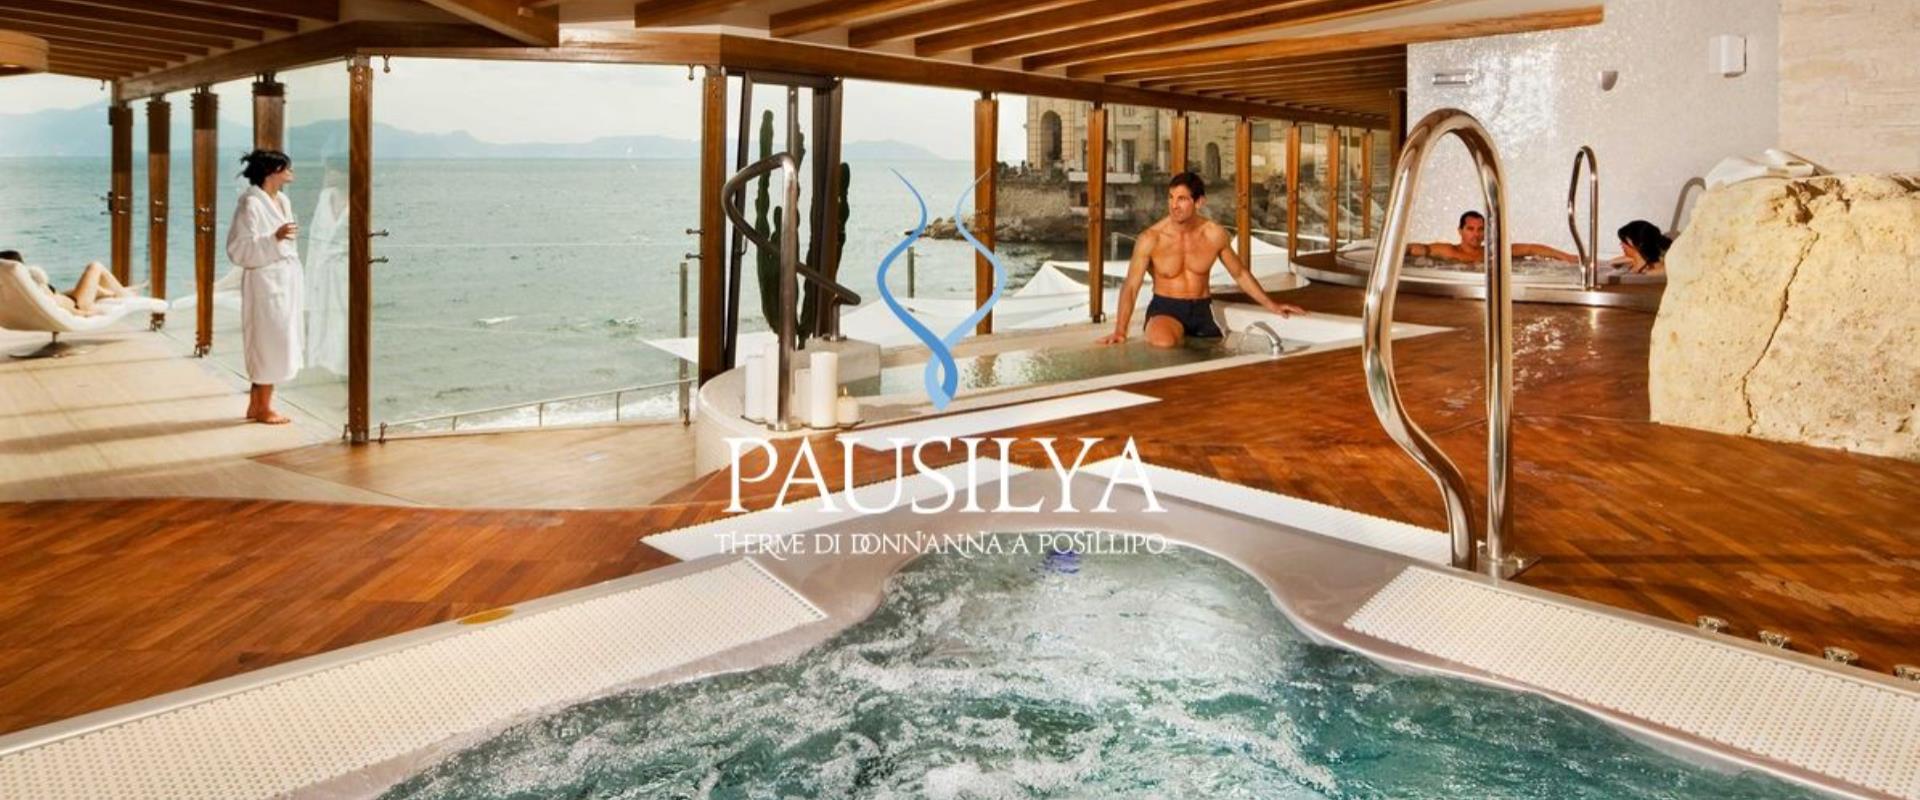 Scopri il centro SPA Pausilya convenzionato con l'Hotel Paradiso: qualsiasi trattamento per il benessere del tuo corpo!